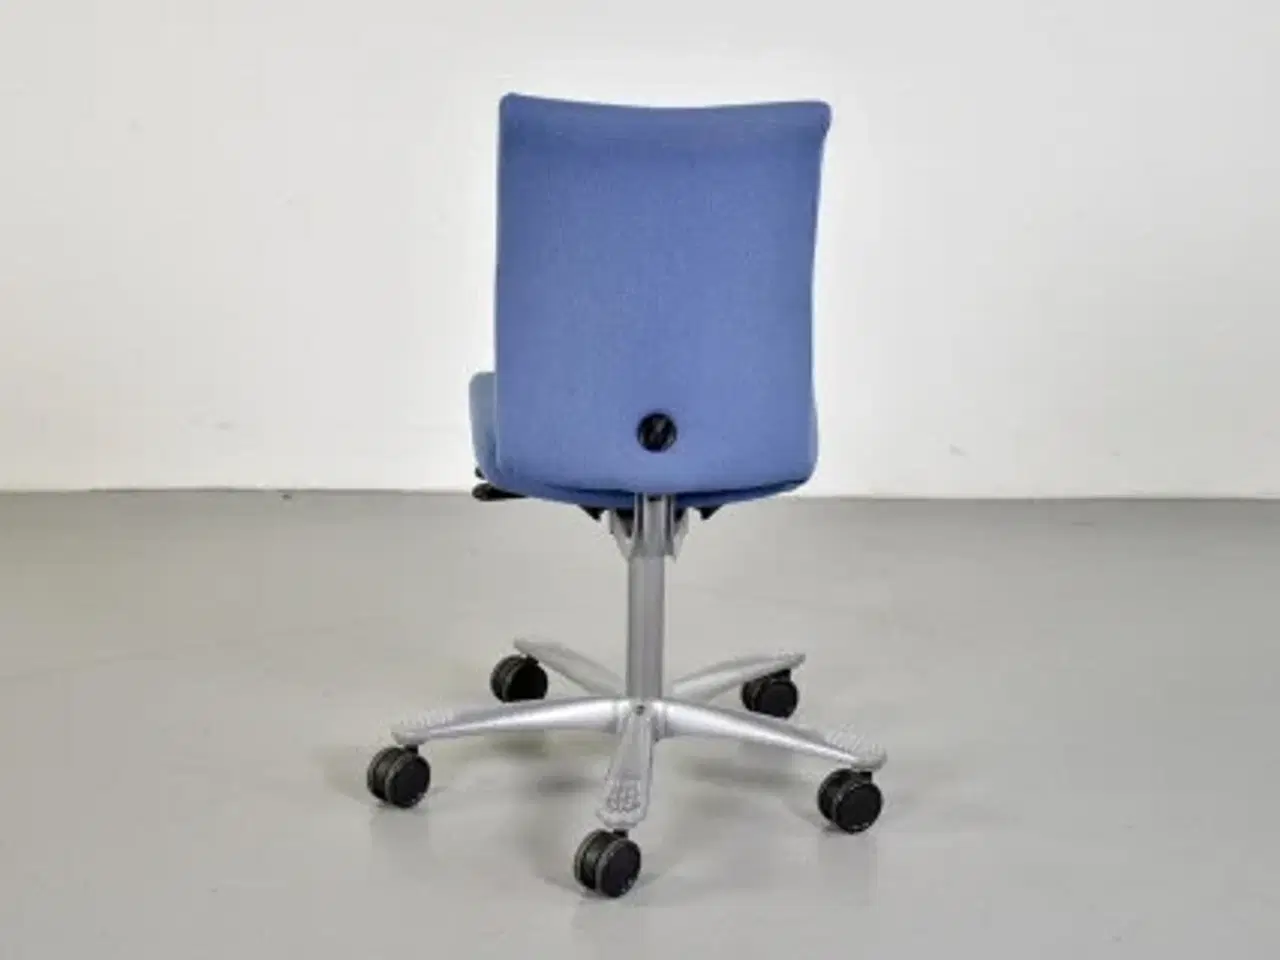 Billede 3 - Häg h04 credo 4200 kontorstol med lyseblåt polster og gråt stel